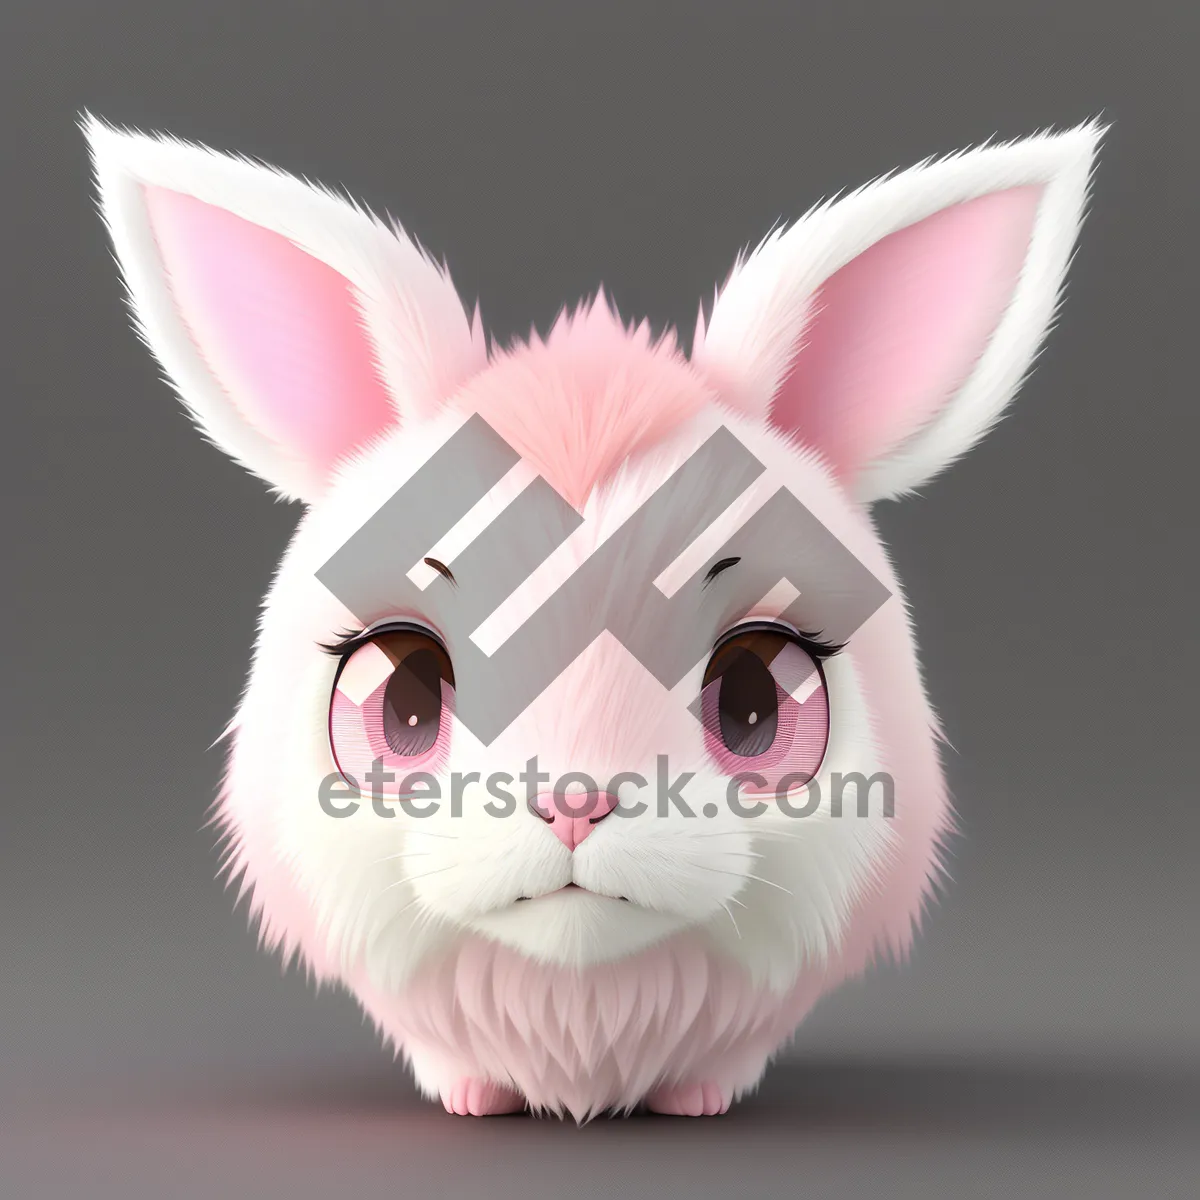 Picture of Fluffy White Bunny Portrait in Studio